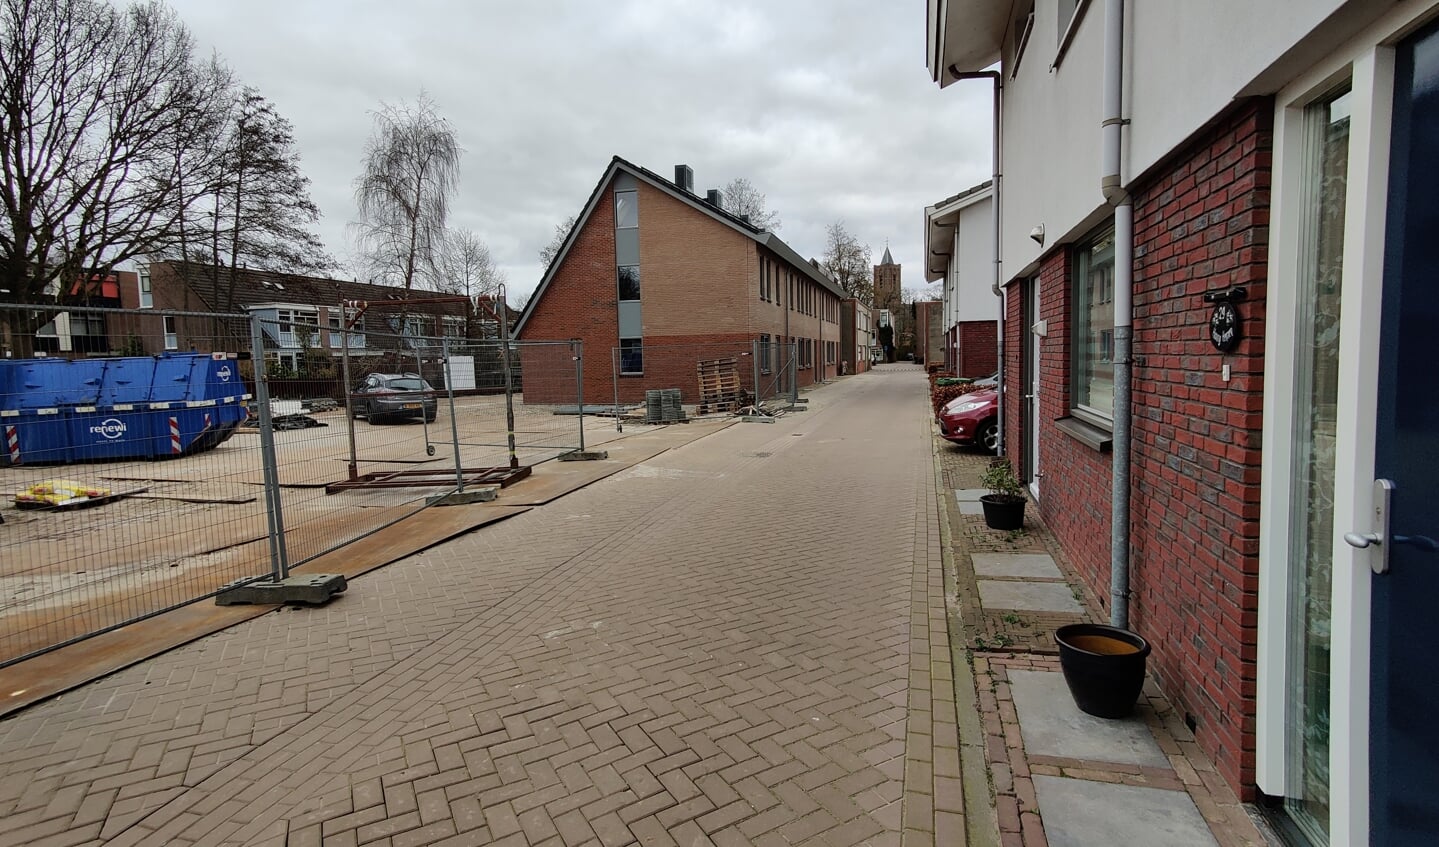 In goed overleg met de gemeente is in Westbroek een kleinschalig bouwproject vlot getrokken. [foto Henk van de Bunt]